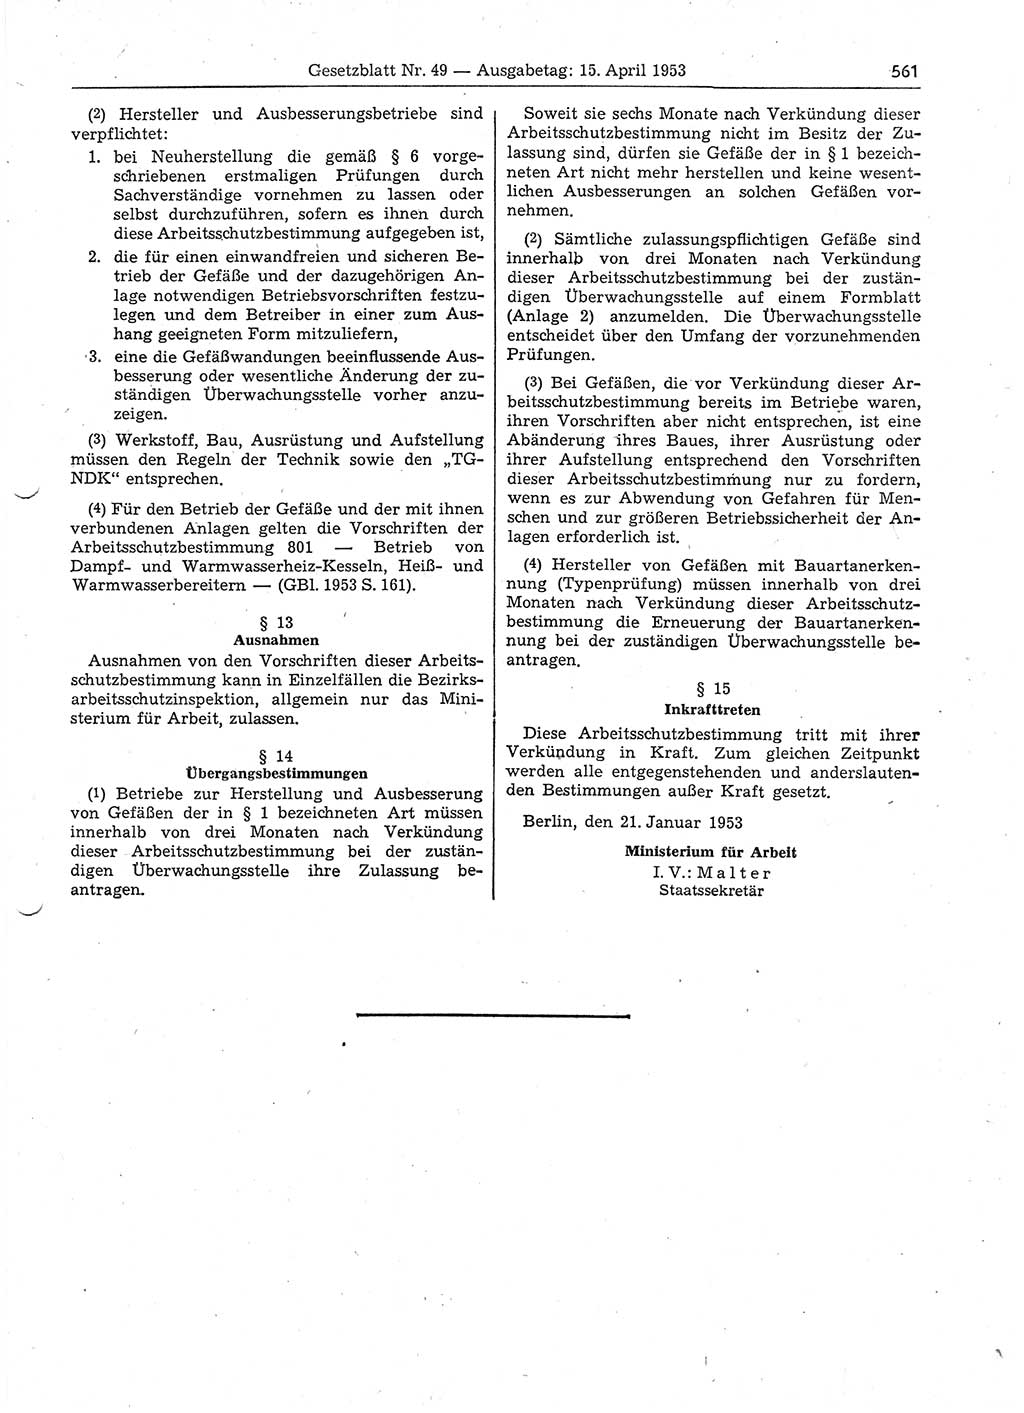 Gesetzblatt (GBl.) der Deutschen Demokratischen Republik (DDR) 1953, Seite 561 (GBl. DDR 1953, S. 561)